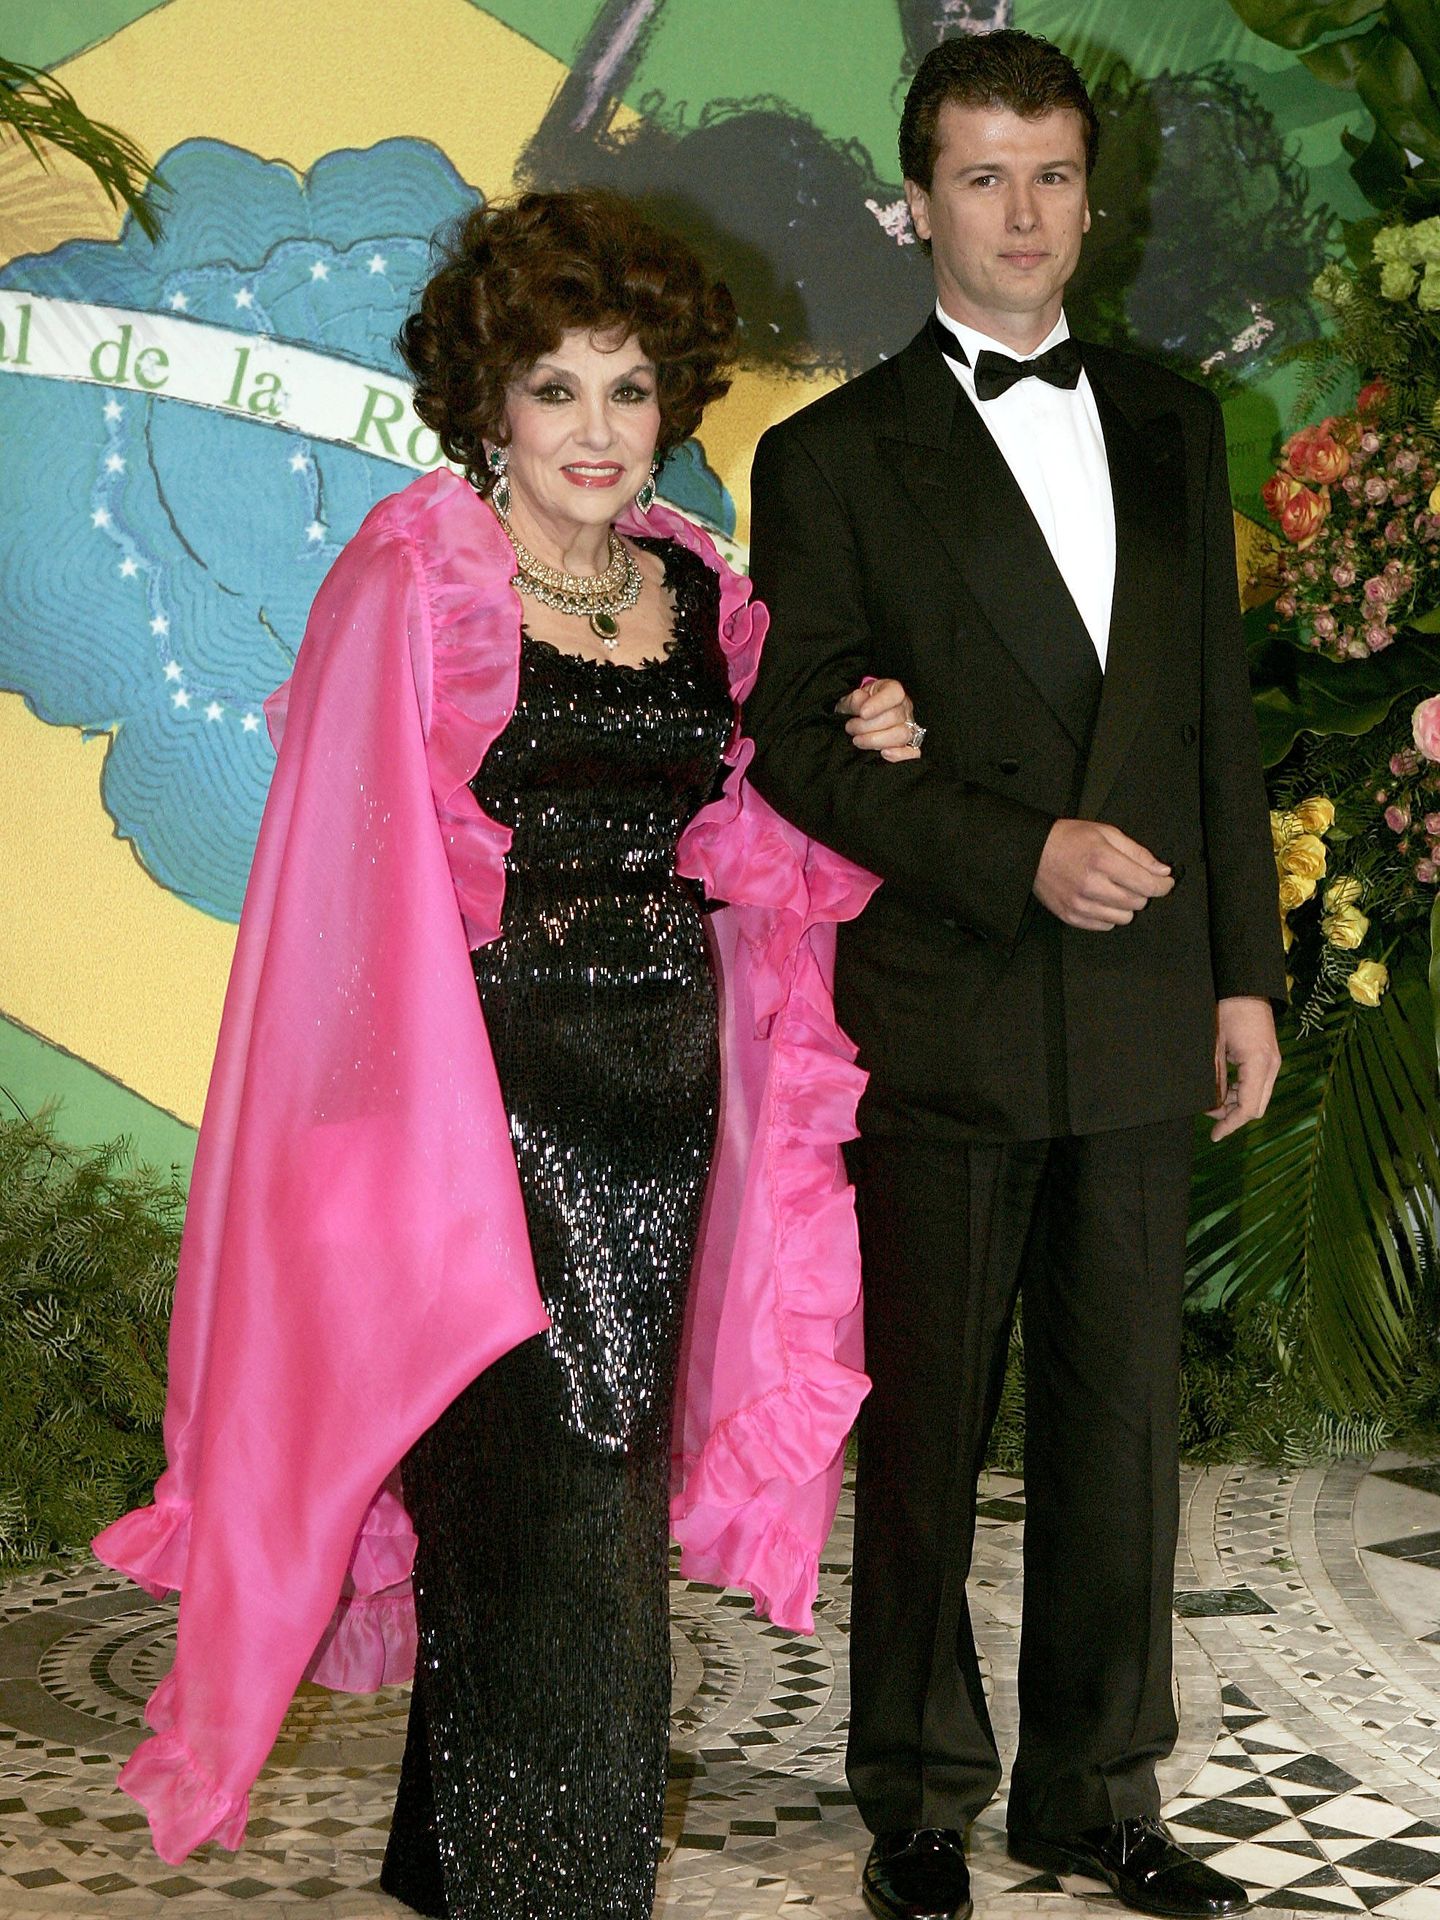 Gina Lollobrigida y Javier Rigau, en el Baile de la Rosa de 2005. (Getty)